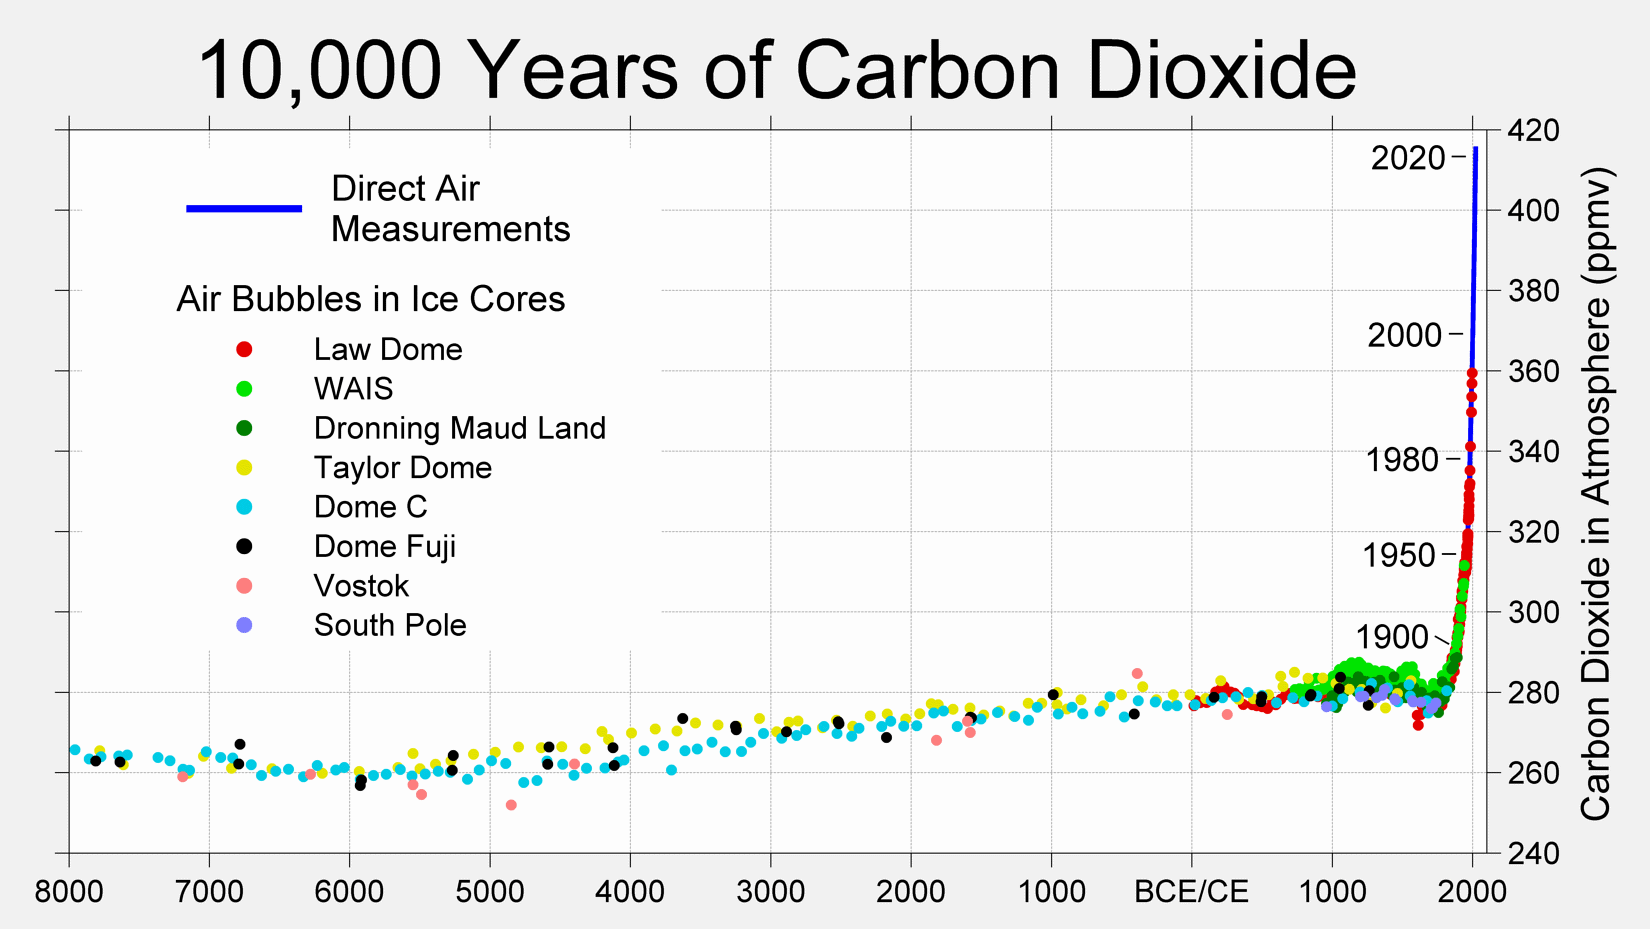 10k-years-of-carbon-dioxide-data-viz.png